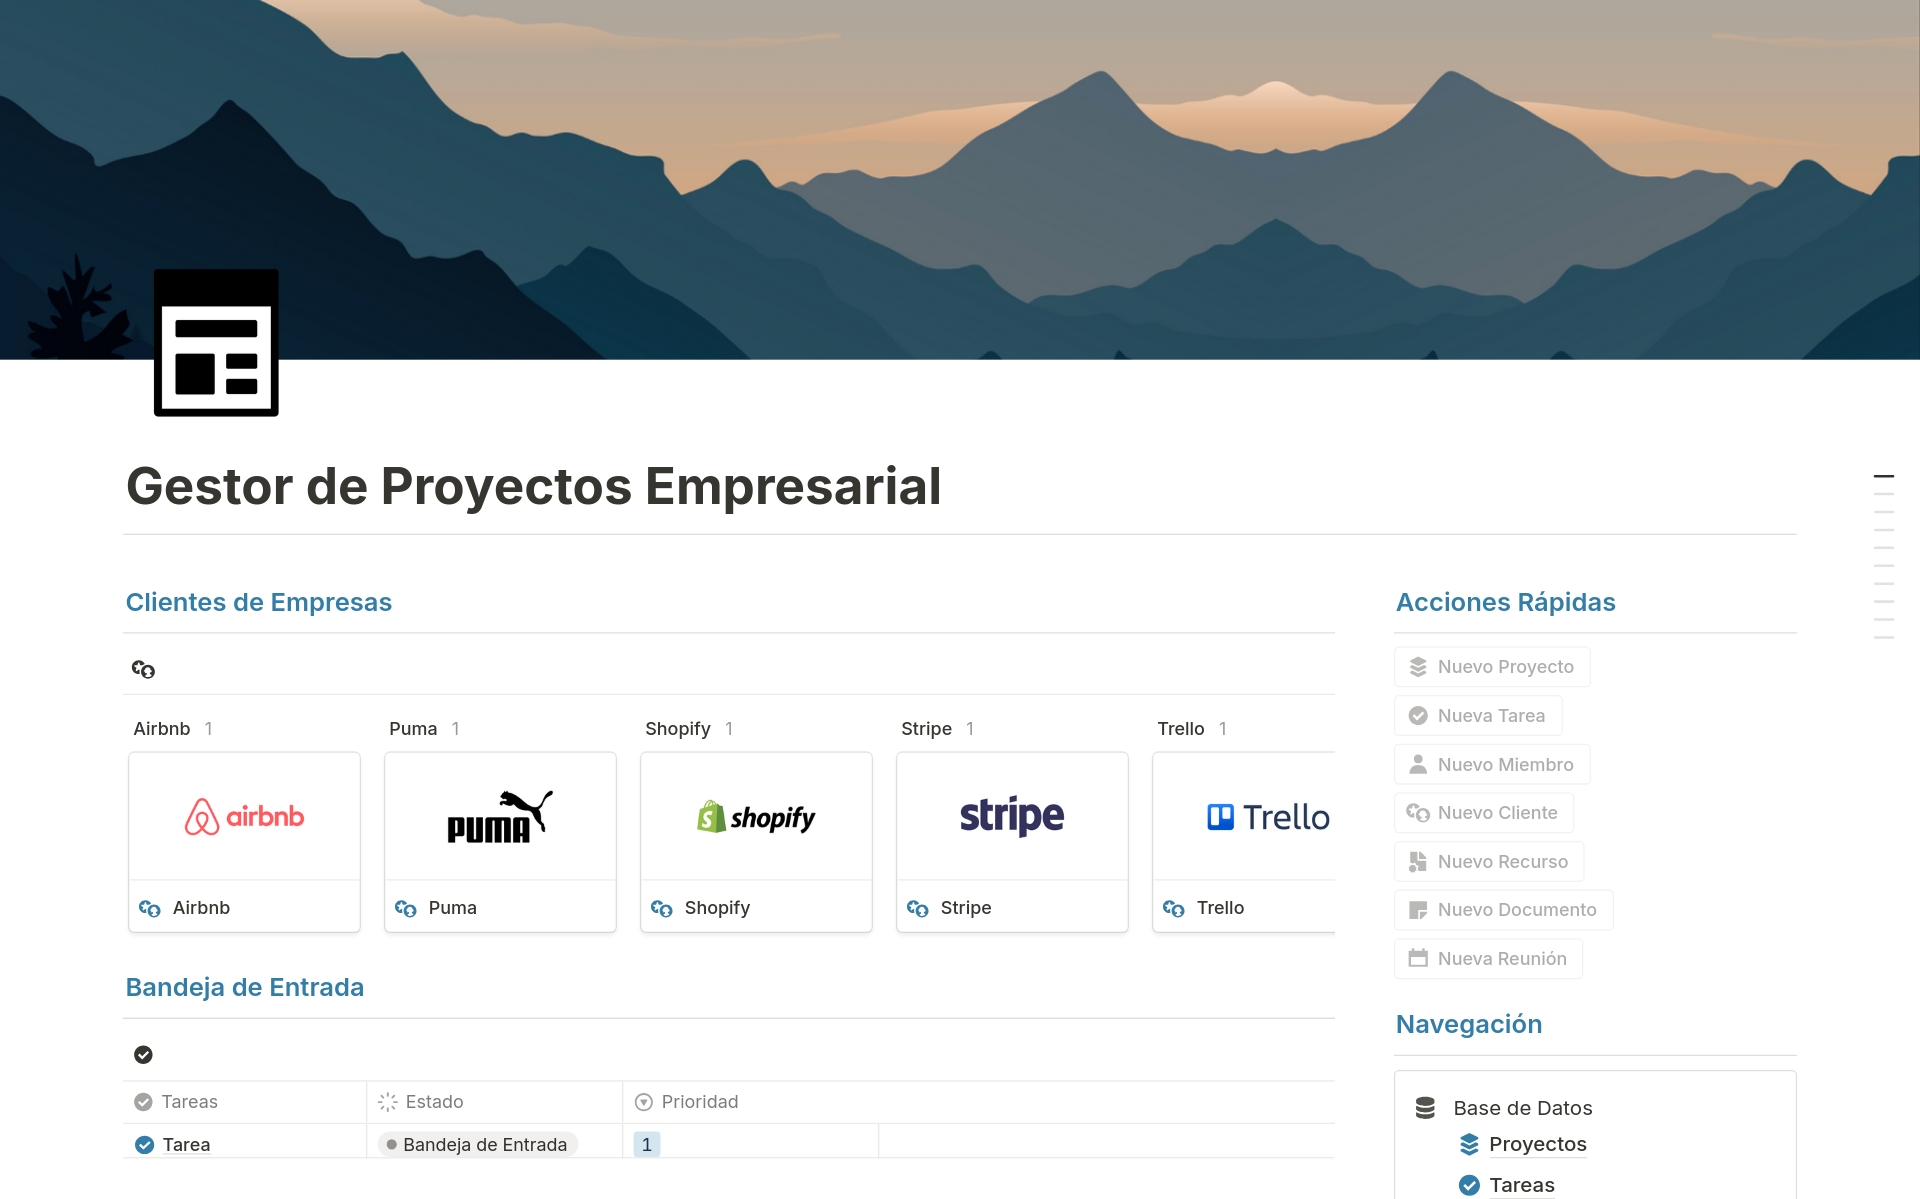 A template preview for Gestor de Proyectos Empresarial